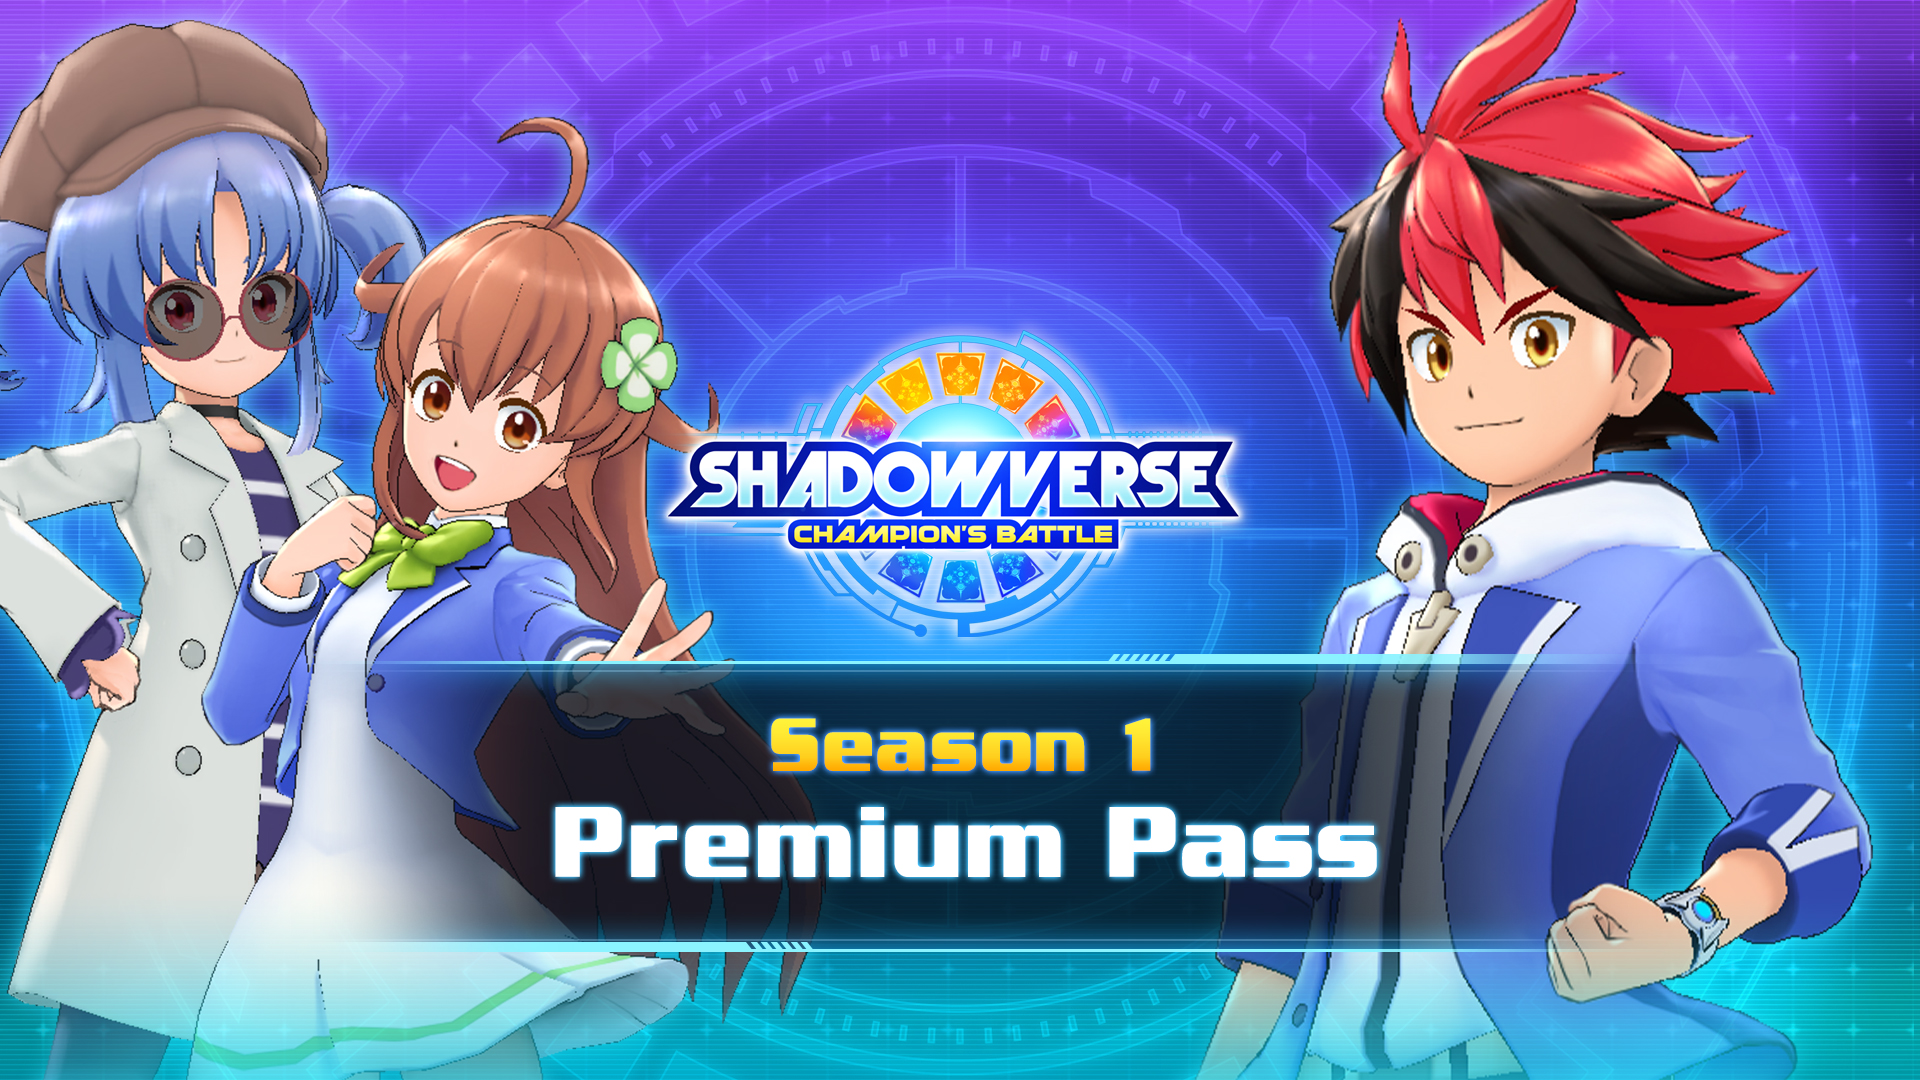 Season 1 Premium Pass